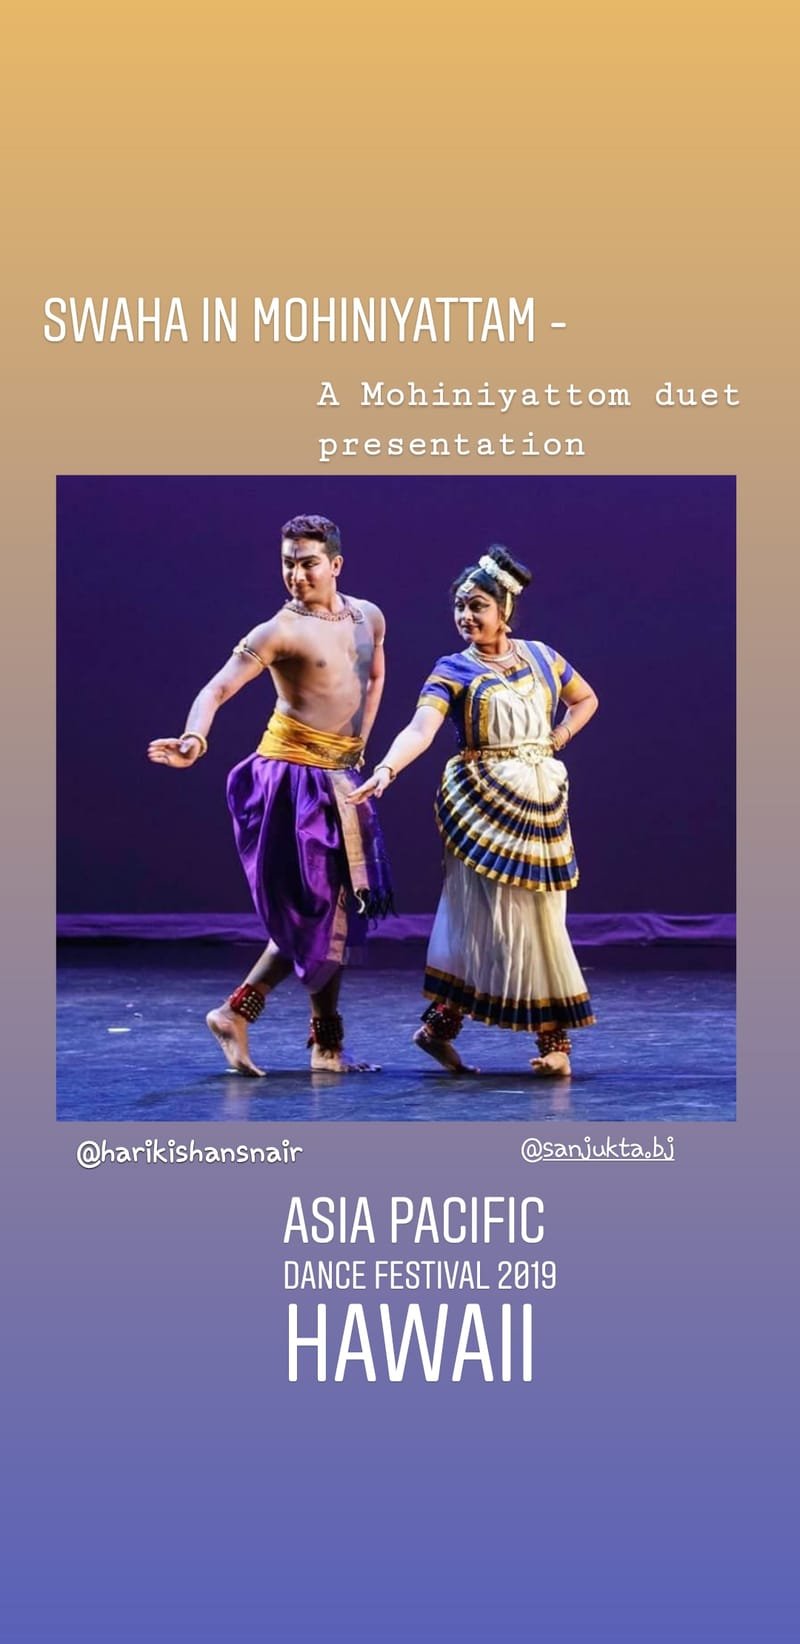 Asia Pacific Dance Festival